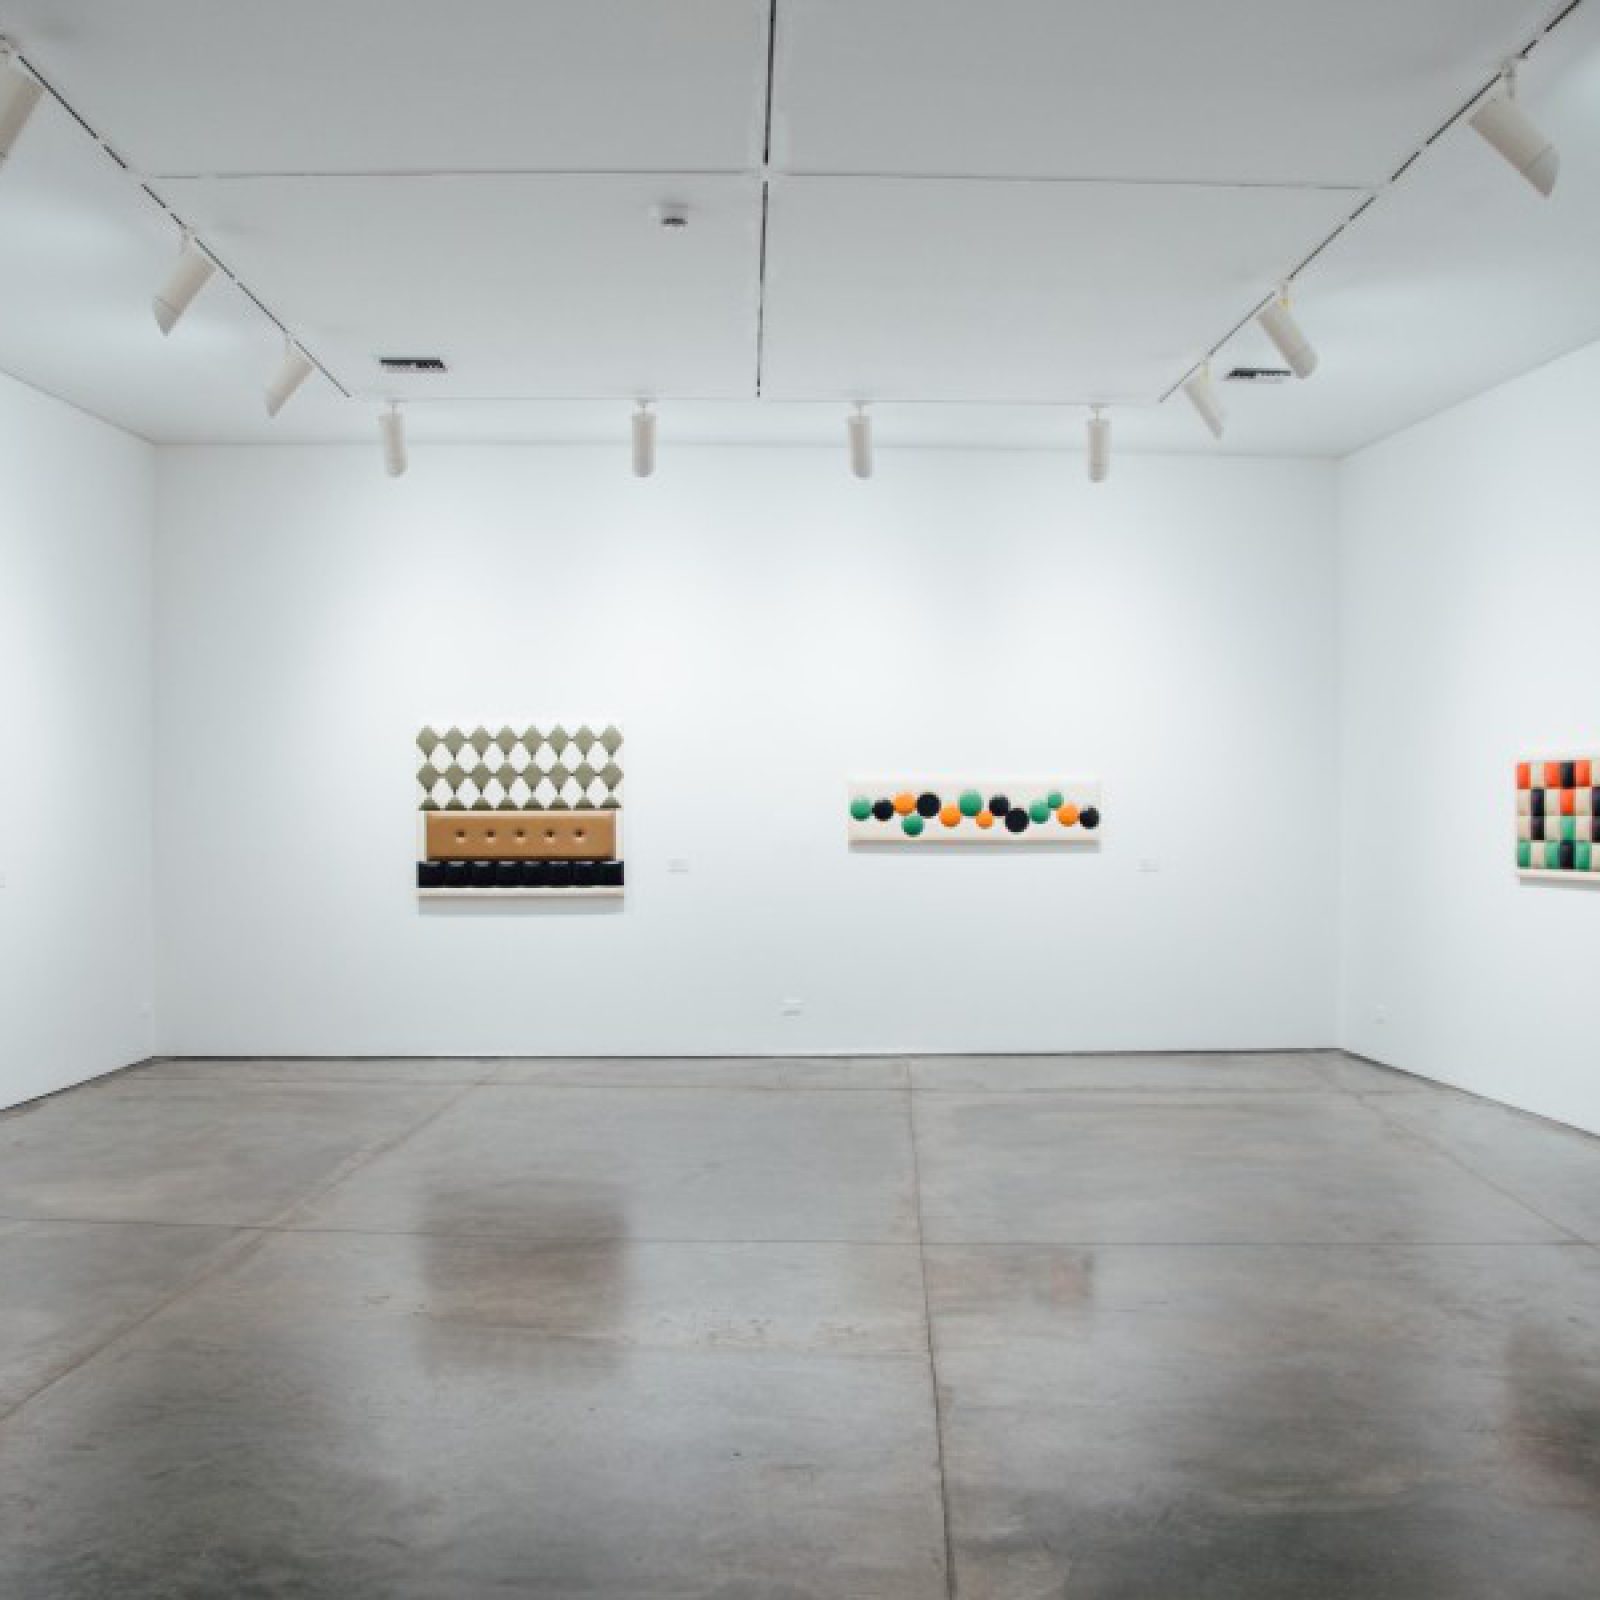 Vista de la exposición "Arte Blando", de Leonel Estrada, en el Museo de Arte Moderno de Medellín (MAMM), 2017. Foto cortesía de MAMM